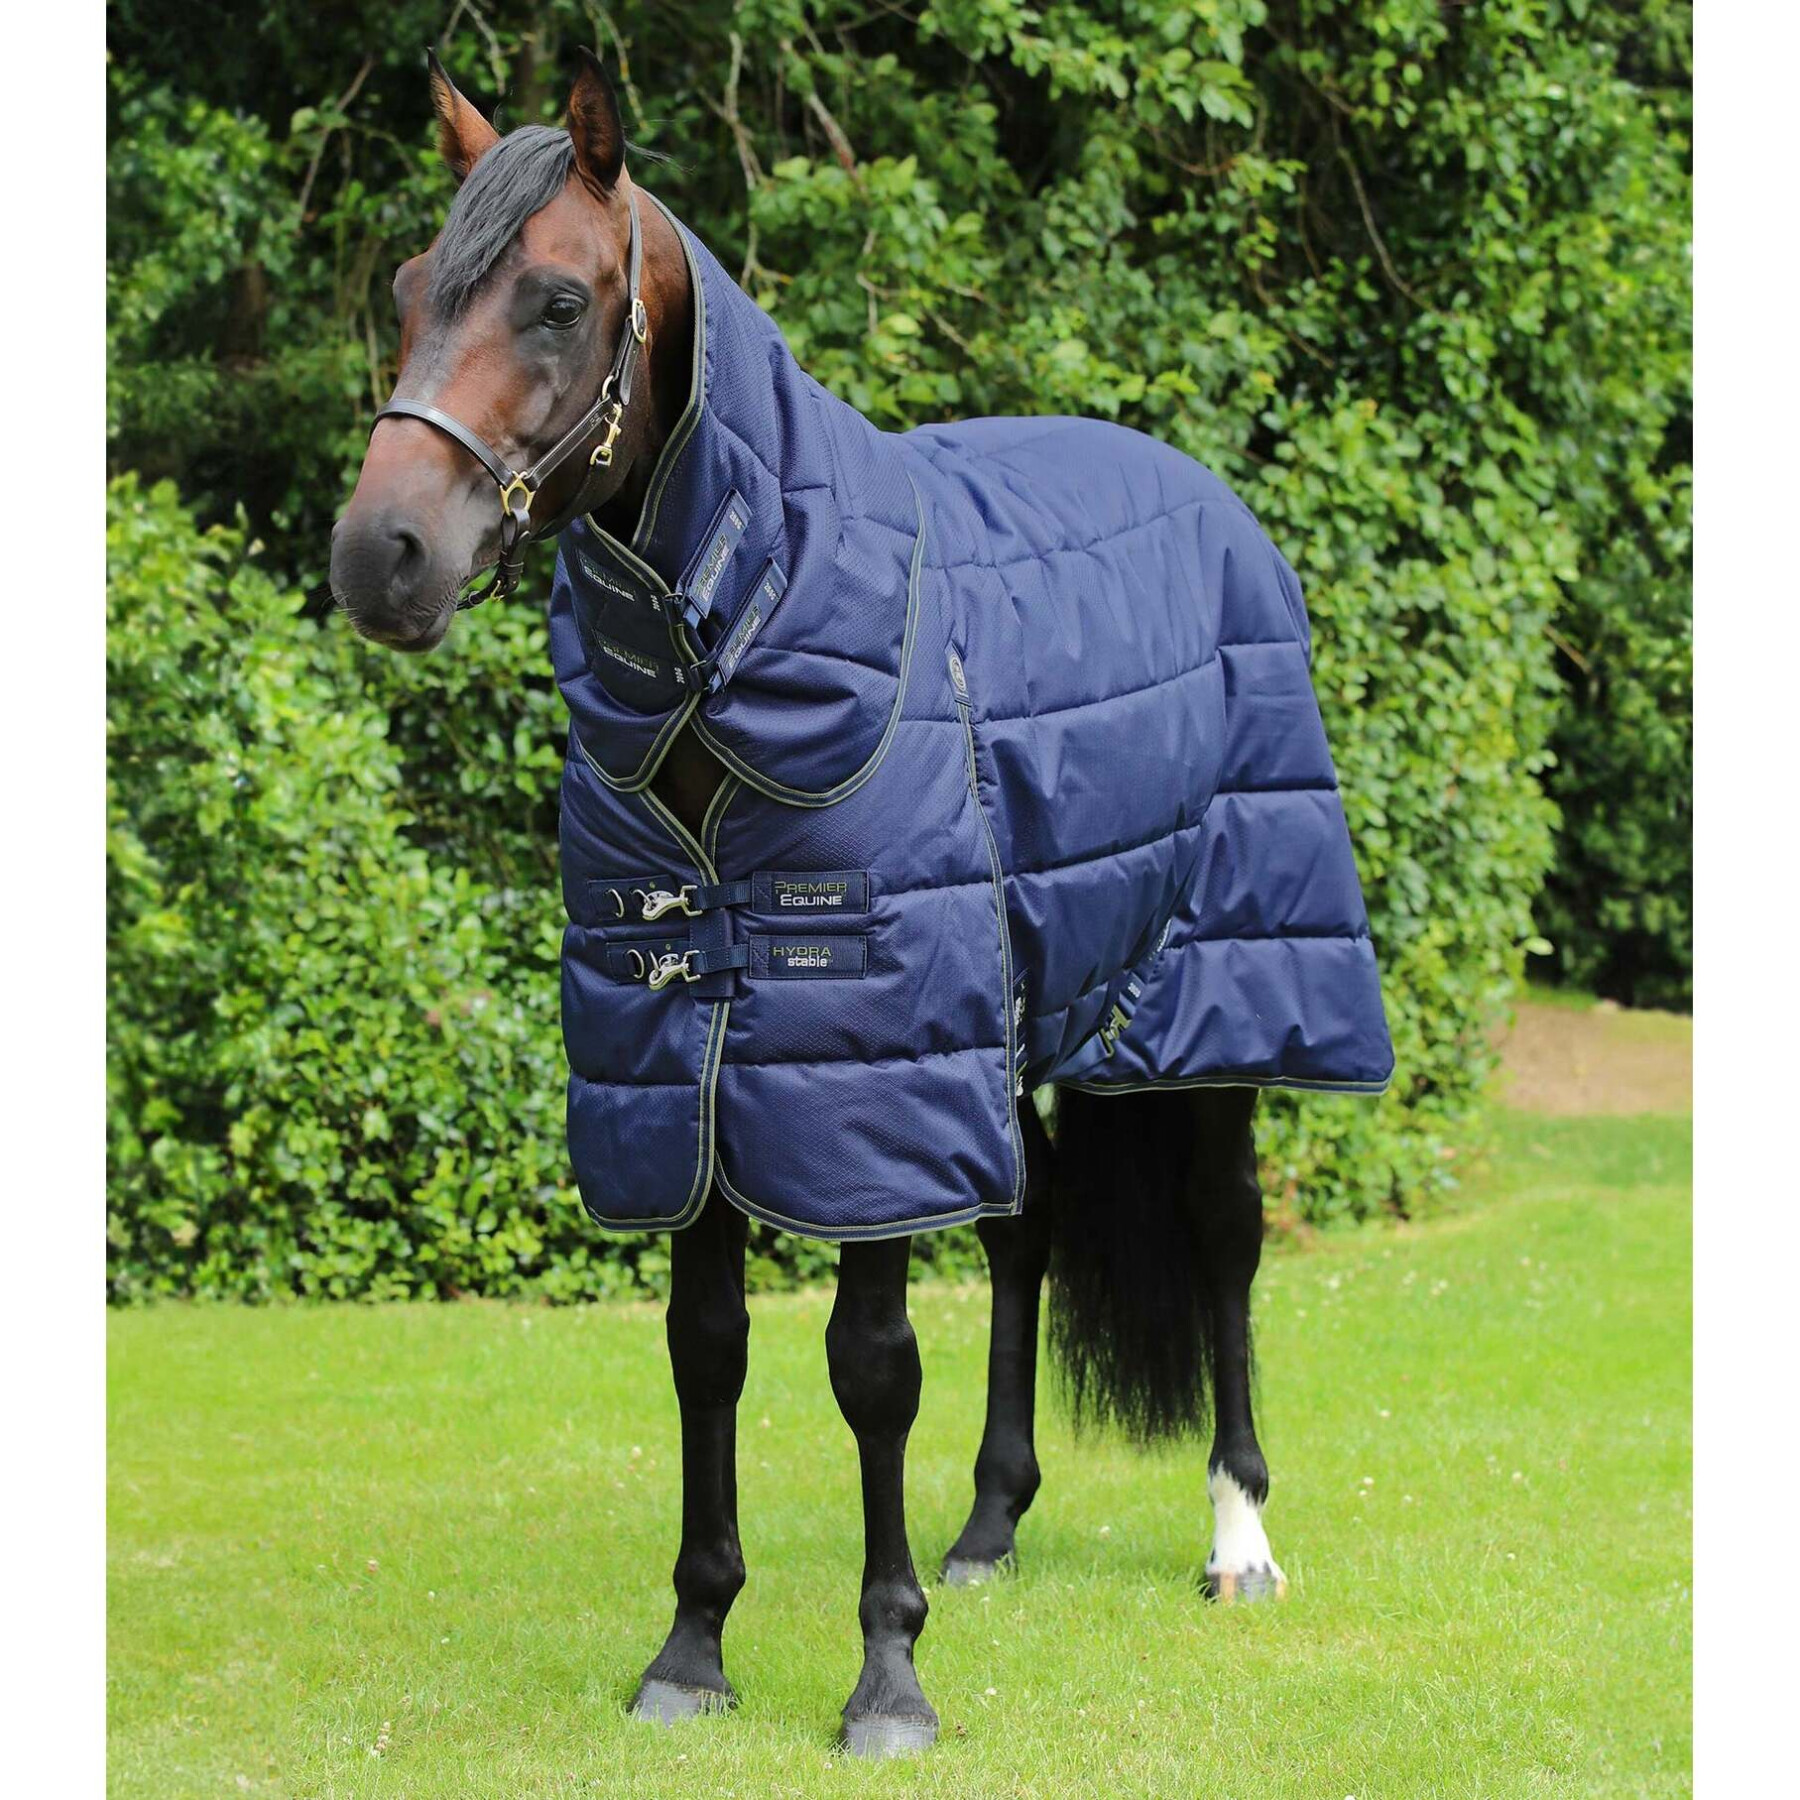 Cobertor de estábulo para cavalos com cobertura para o pescoço Premier Equine Hydra 350g